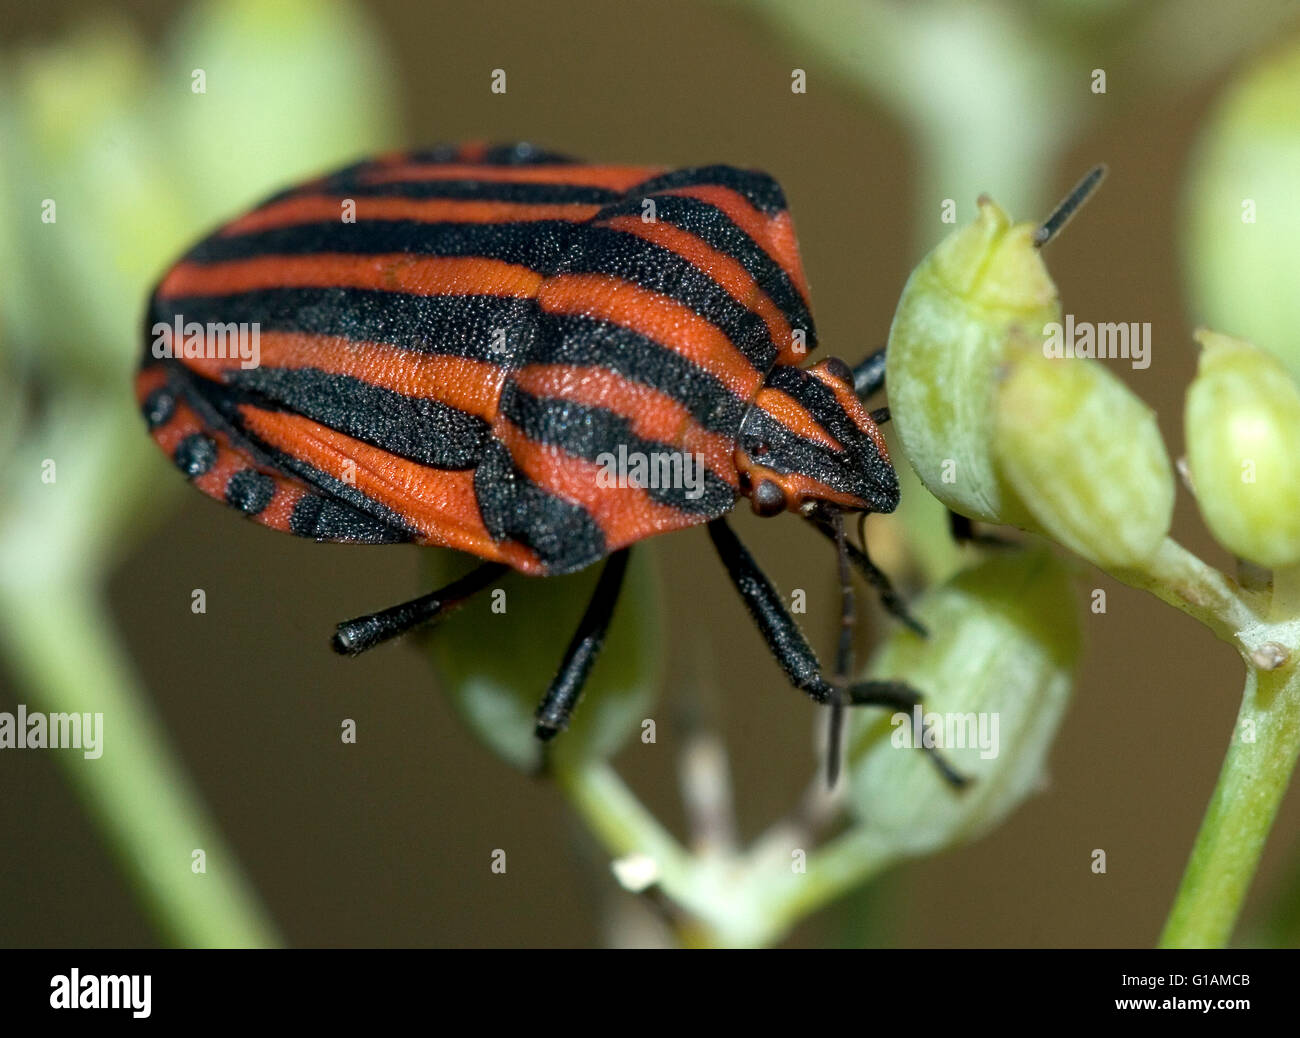 Bedbug seccionado, nombre científico Graphosoma lineatum. Foto de stock